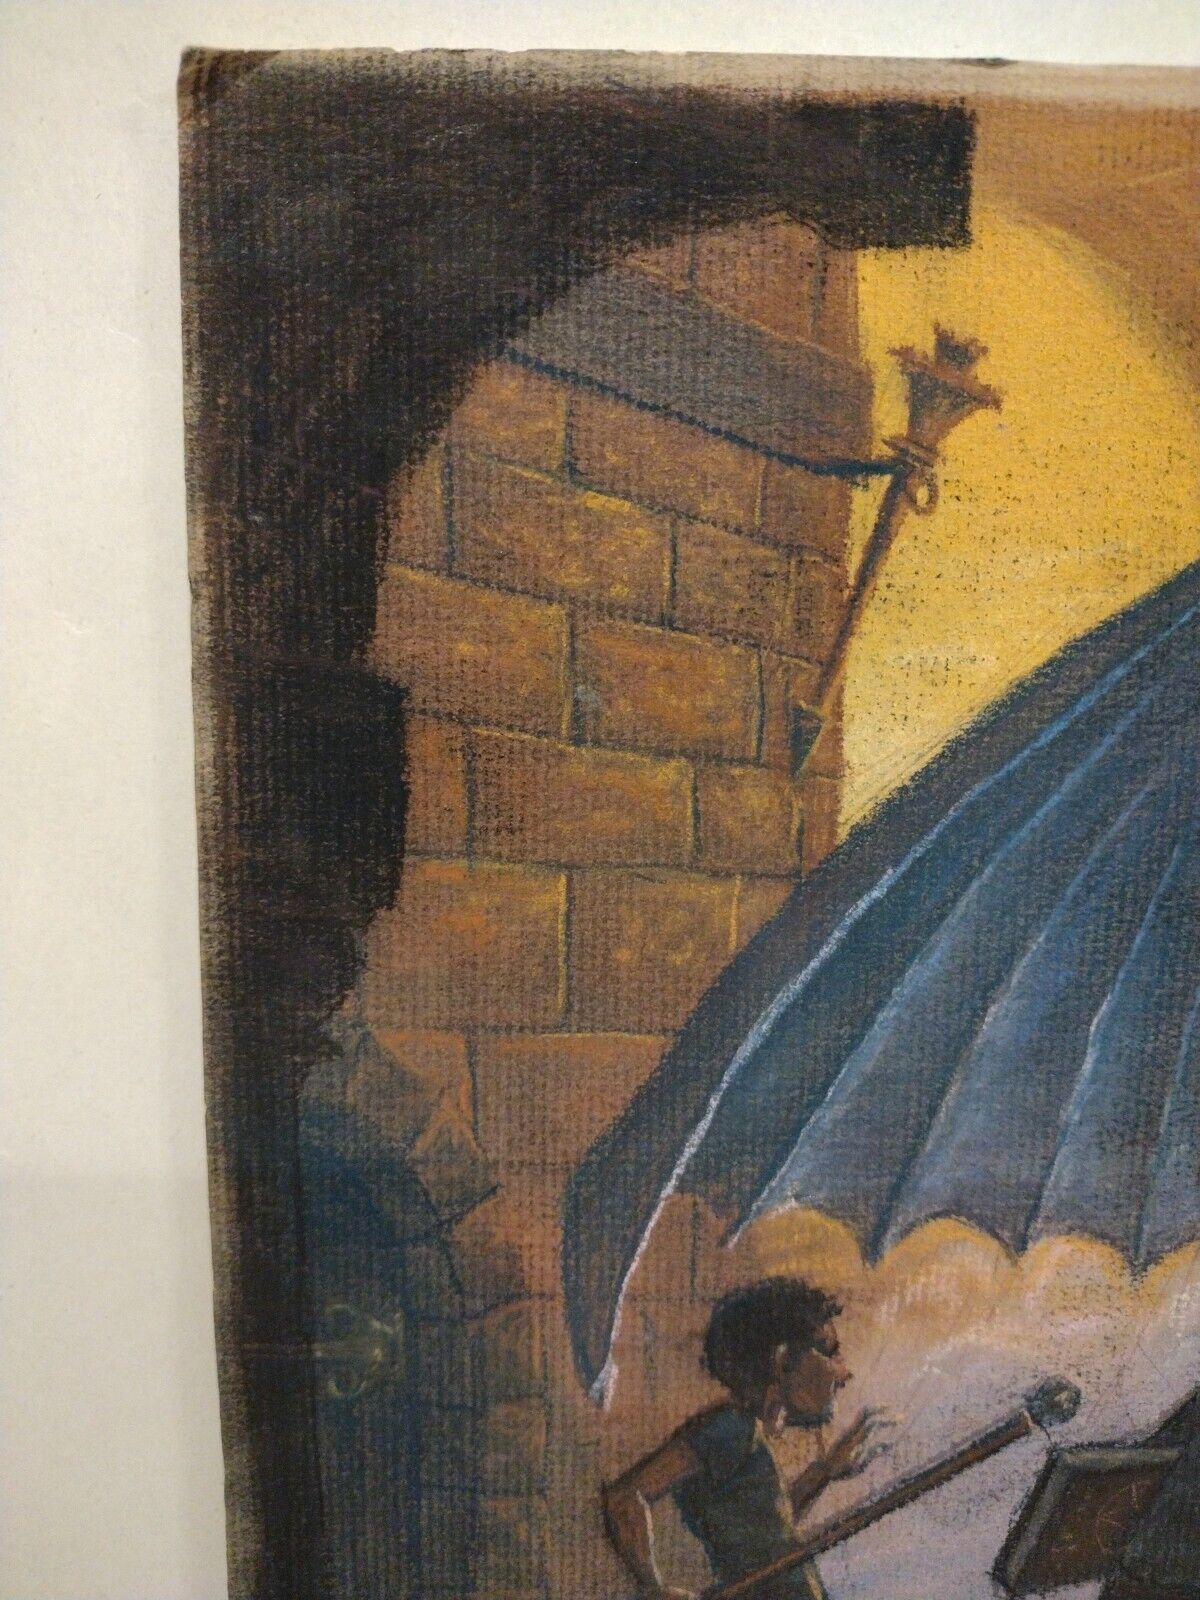 Original Doug Lefler (1984) Fantasy Oil Pastel Illustration Set Wolves Dragon 